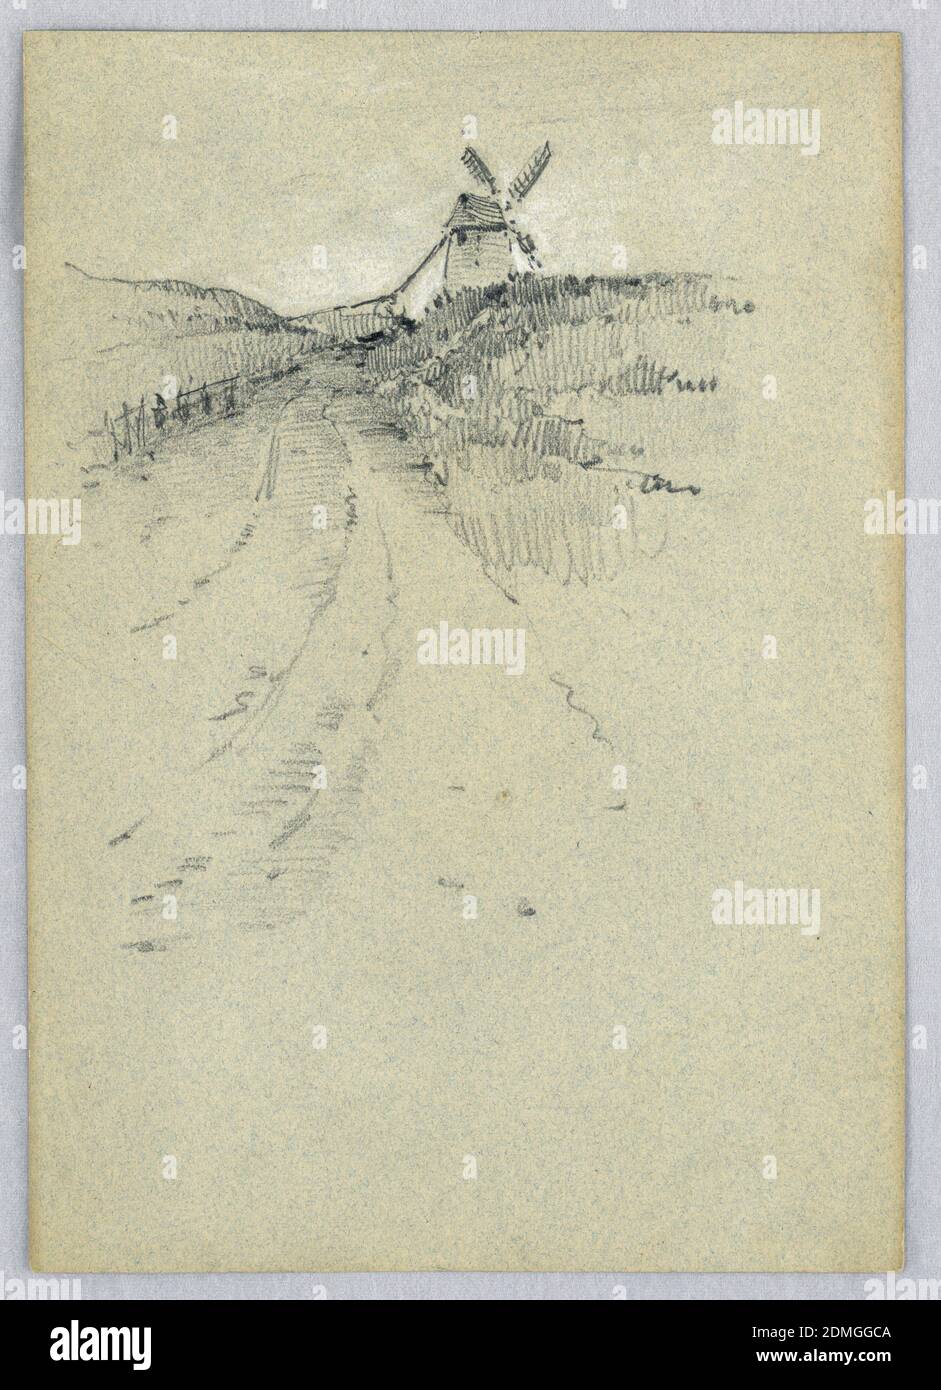 A Windmill, Francis Augustus Lathrop, American, 1849 - 1909, crayón negro y blanco en papel azul-gris, camino a la izquierda, con campos en ambos lados. Molino de viento a distancia, a la derecha de la carretera., EE.UU., CA. 1895, paisajes, dibujo Foto de stock